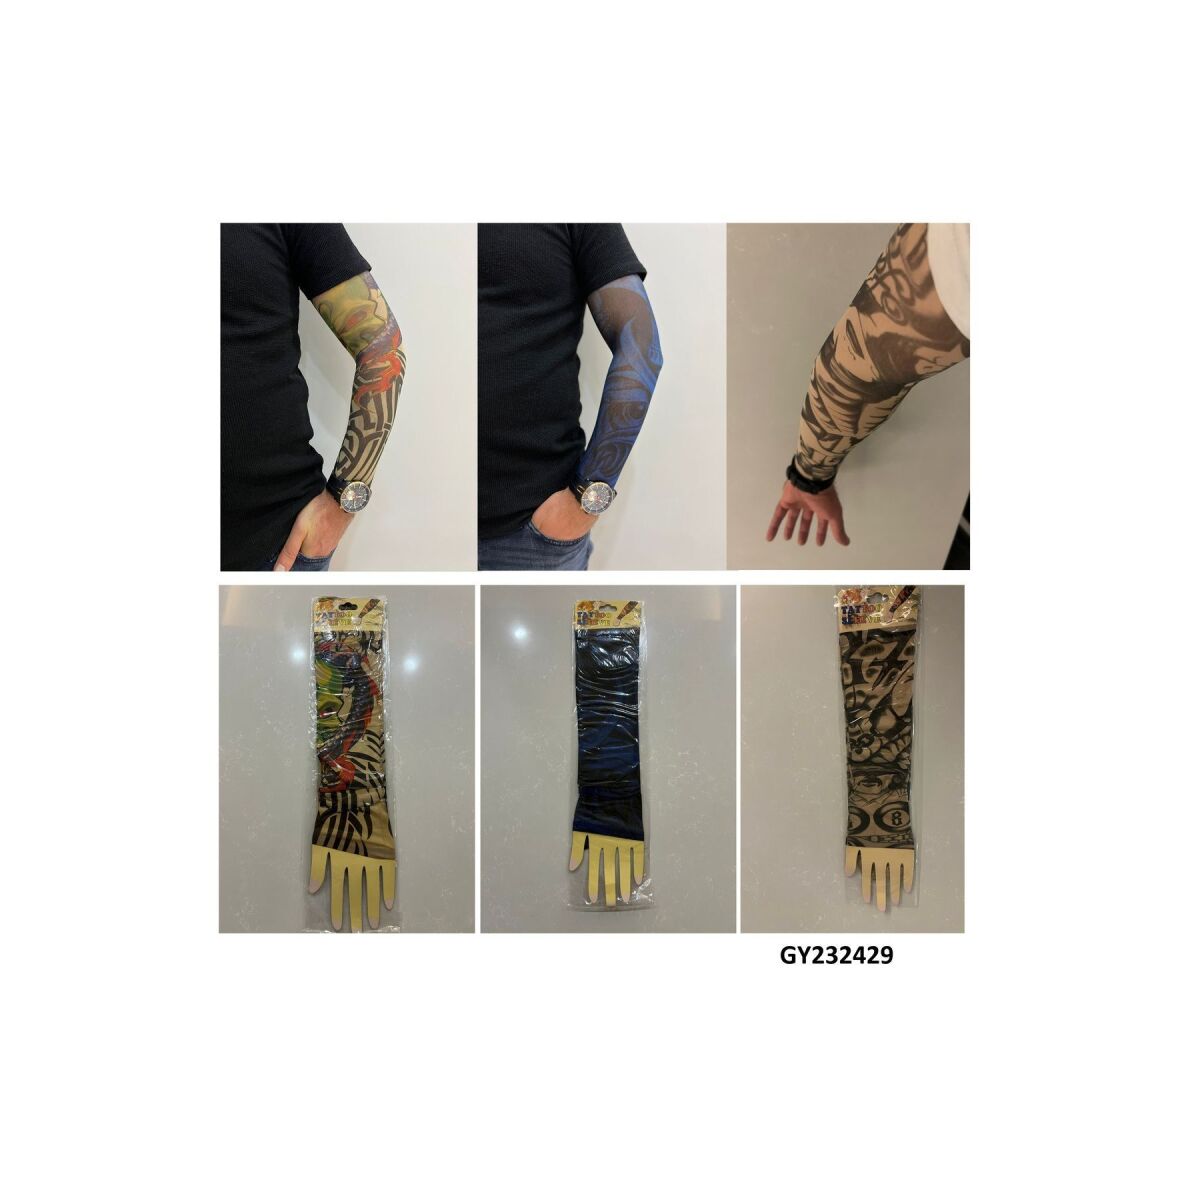 Giyilebilir Dövme 3 Çift 6 Adet Kol Çorap Dövmesi Sleeve Tattoo Set8